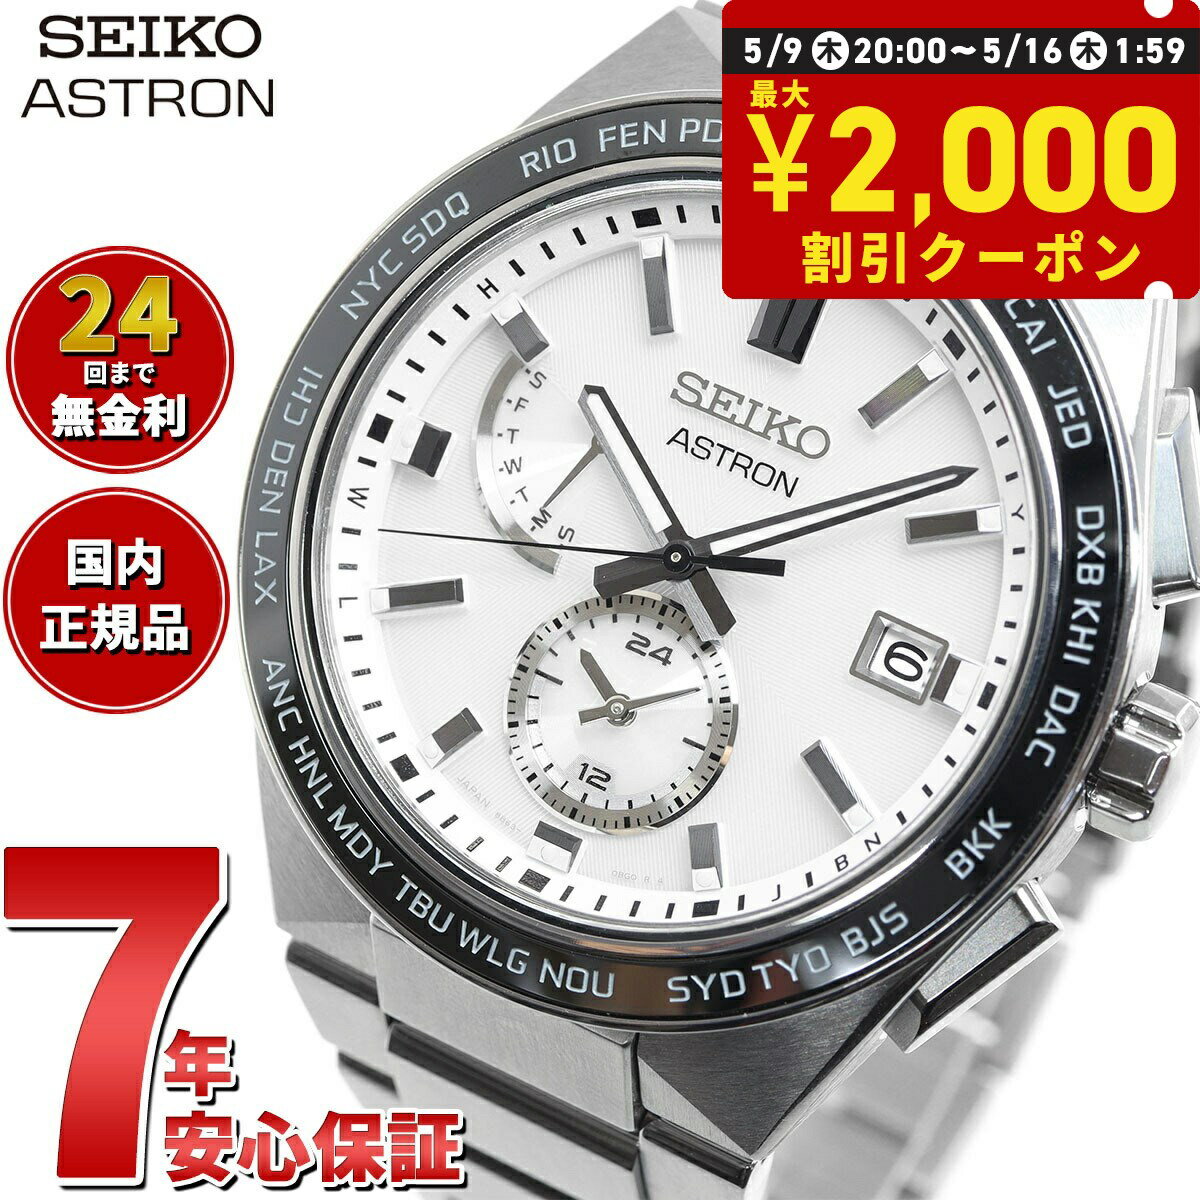 セイコー アストロン ネクスター SBXY049 NEXTER メンズ 腕時計 ソーラー 電波 ワールドタイム SEIKO ASTRON ノーヴァ NOVA チタン